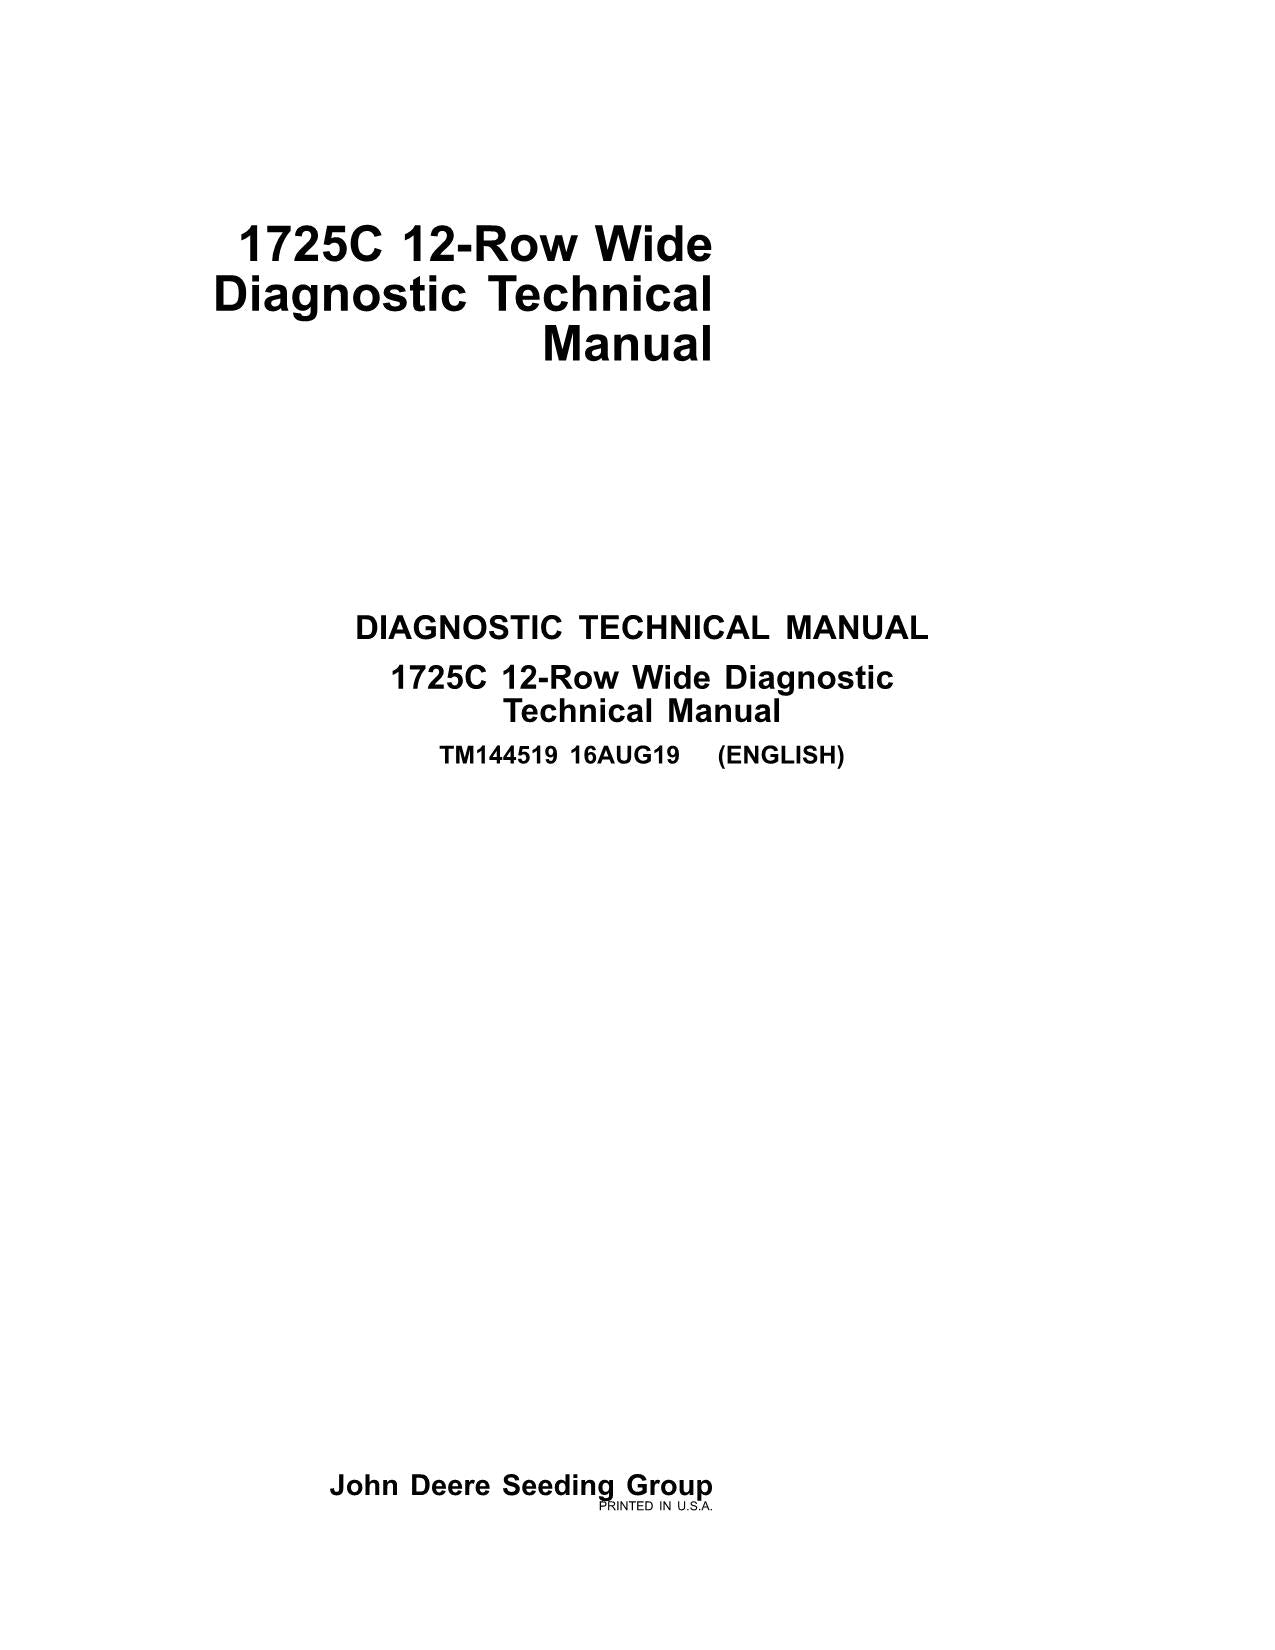 JONH DEERE 1725C PLANTER DIAGNOSTIC SERVICE MANUAL TM144519